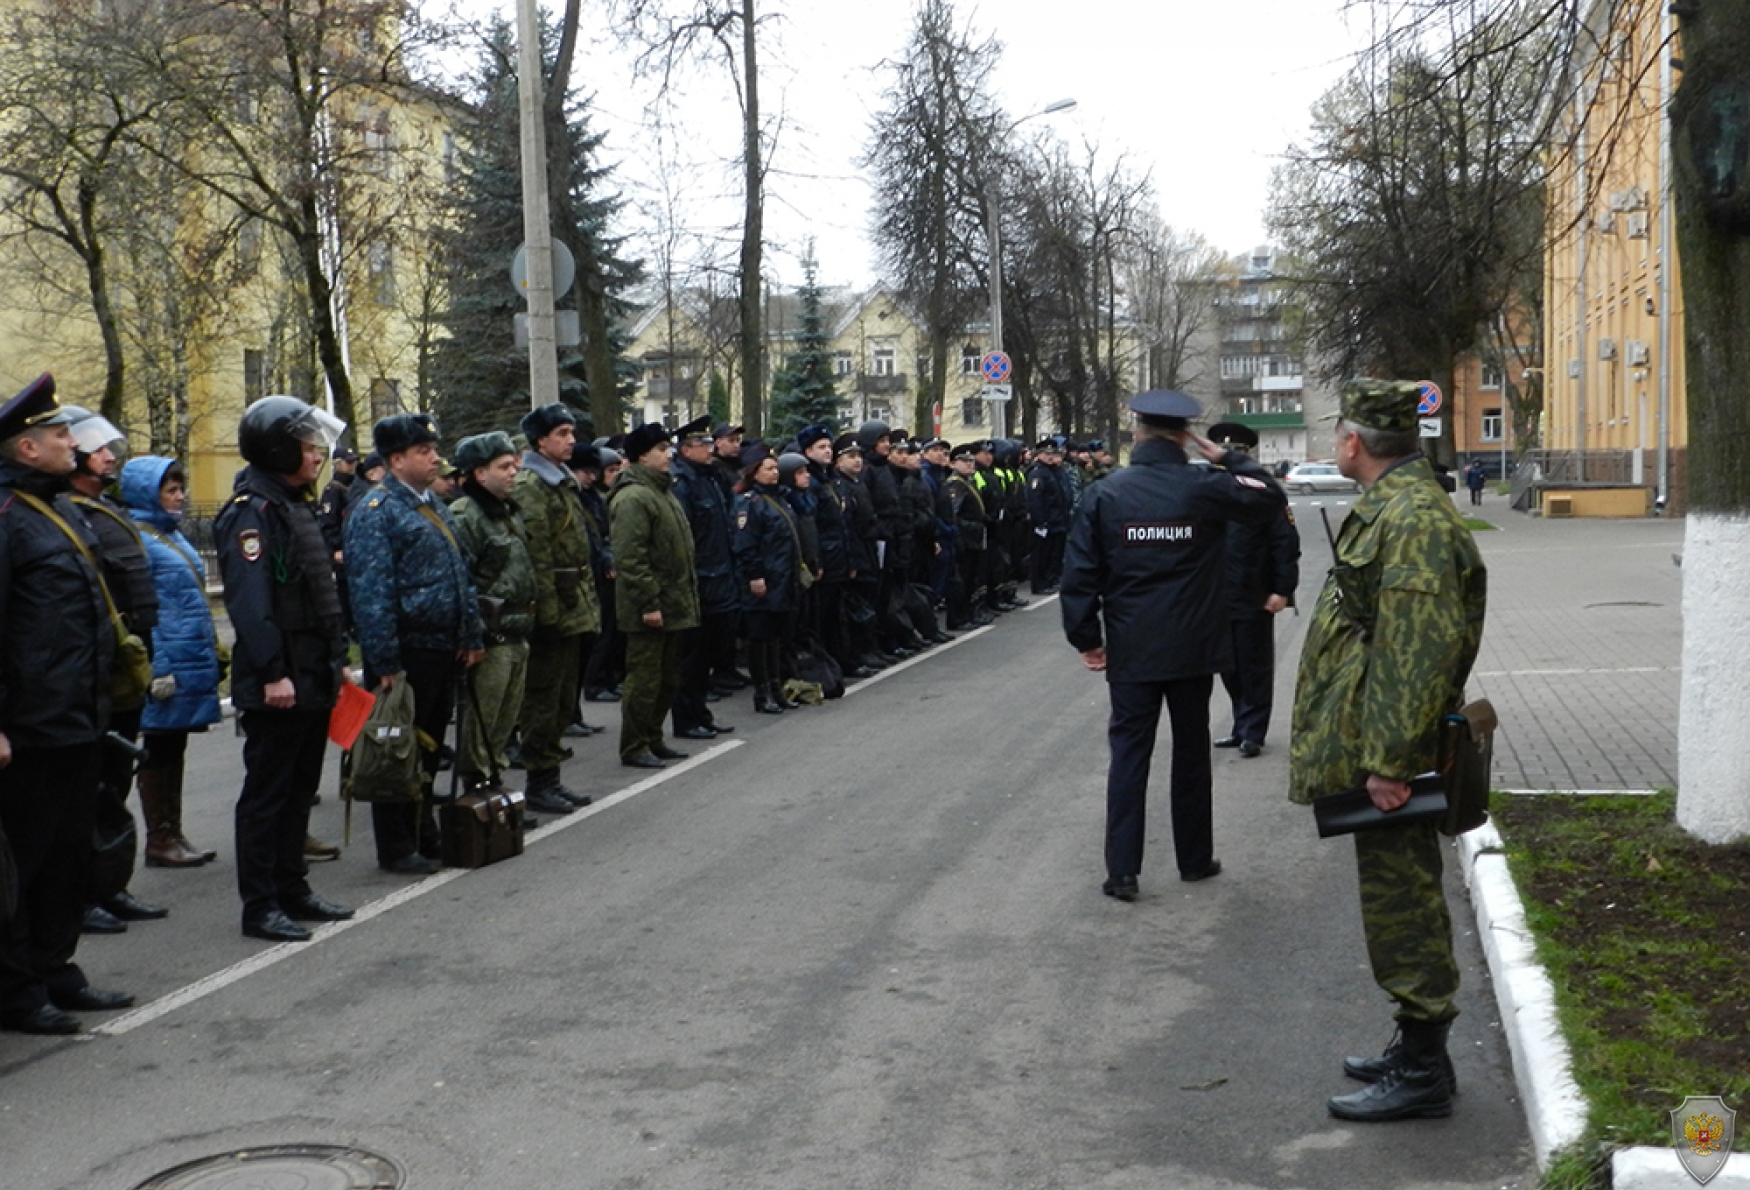 Оперативным штабом в Псковской области проведено антитеррористическое учение под условным наименованием «Метель-2018»